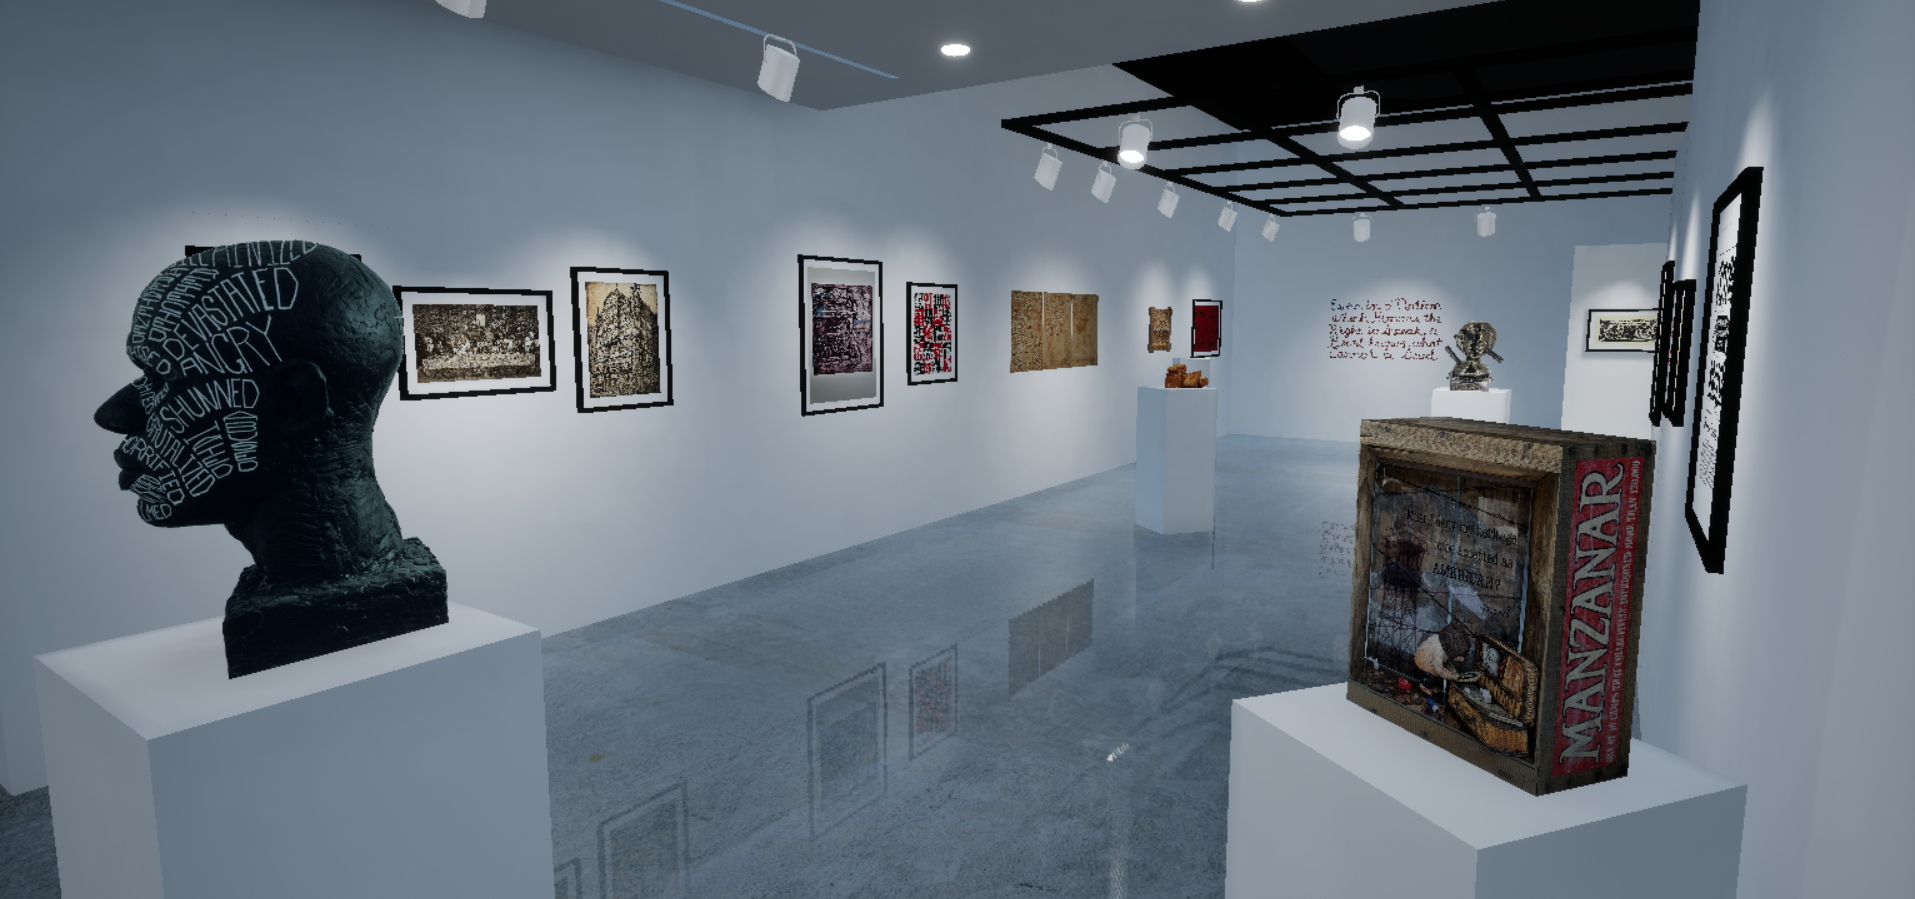 Installation View, Corridor of Gallery, "Ink & Clay 45" Virtual Exhibition